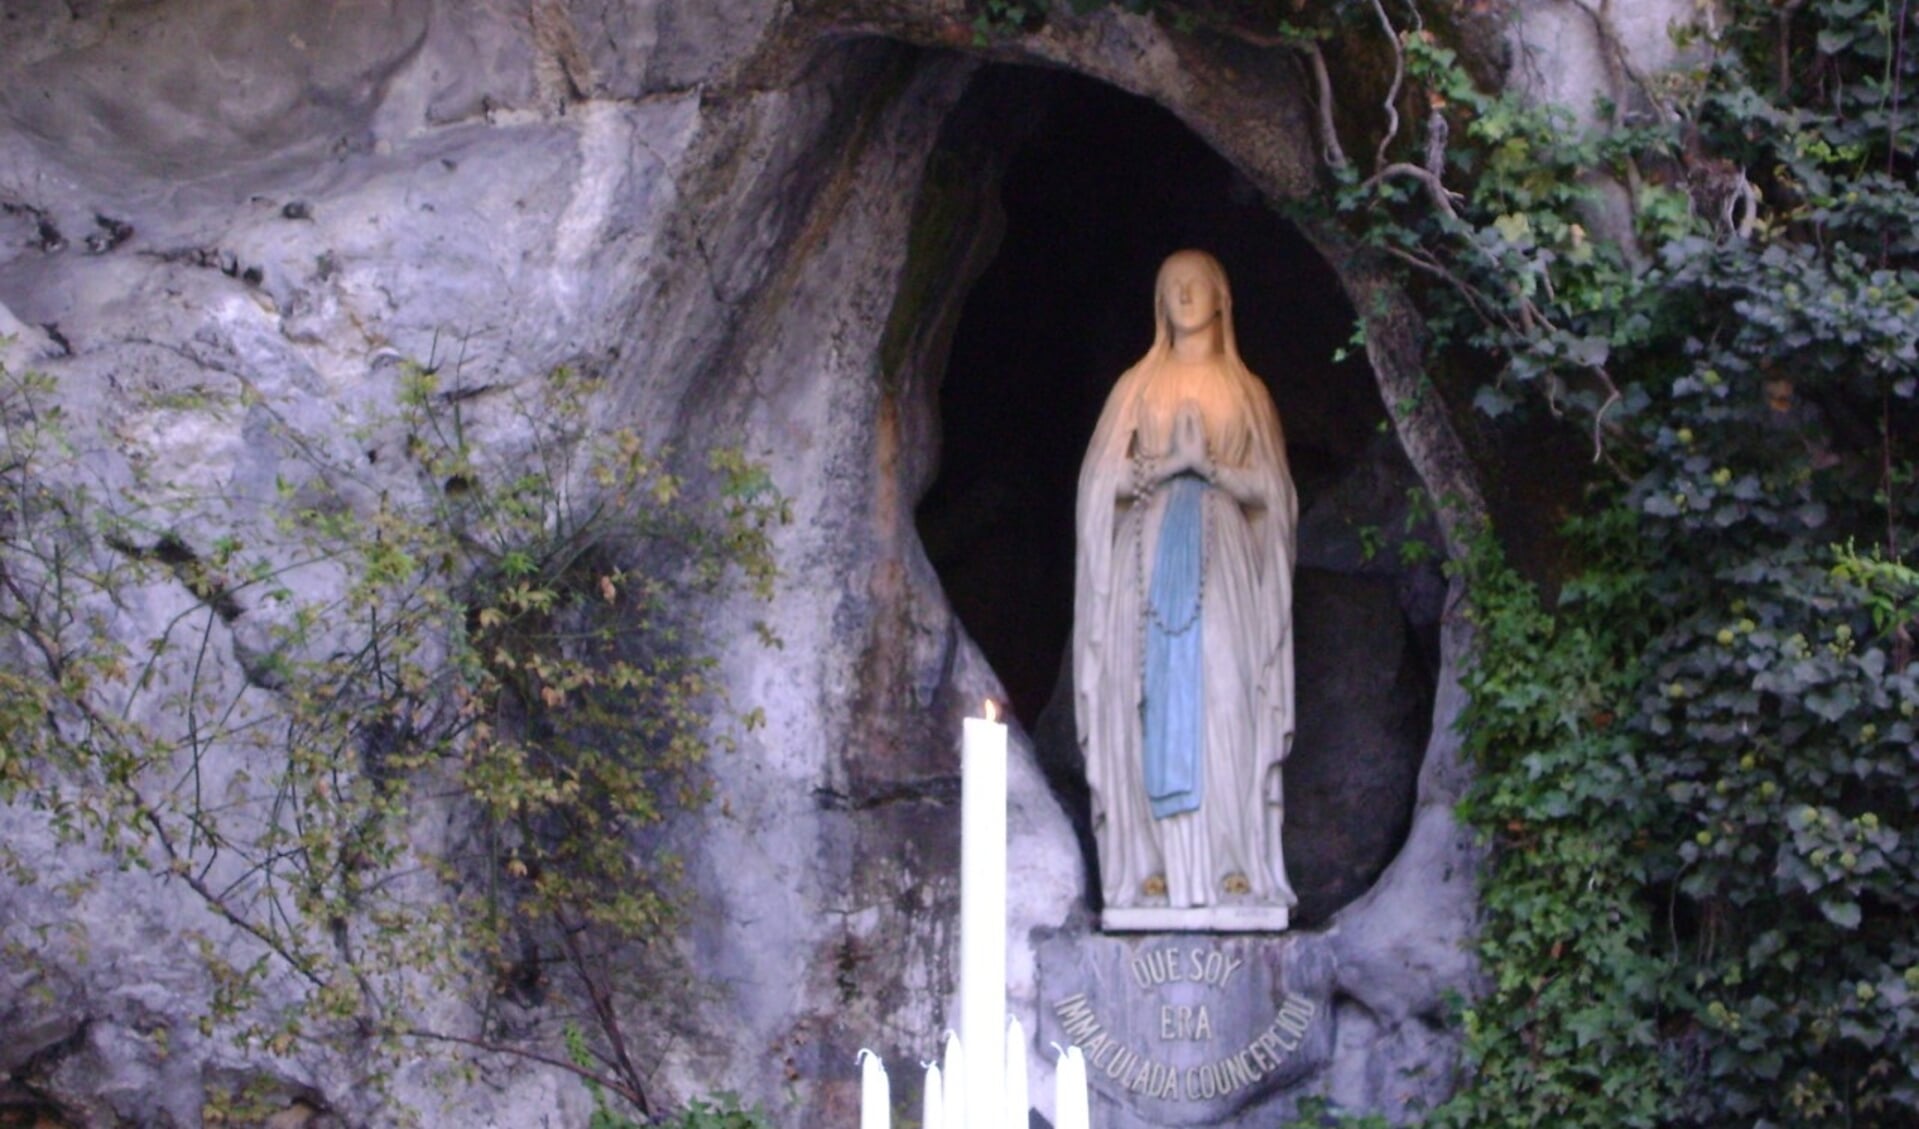 De bekendste plek in het Franse bedevaartsoort Lourdes is zonder twijfel het Heiligdom van Onze-Lieve-Vrouwe van Lourdes.